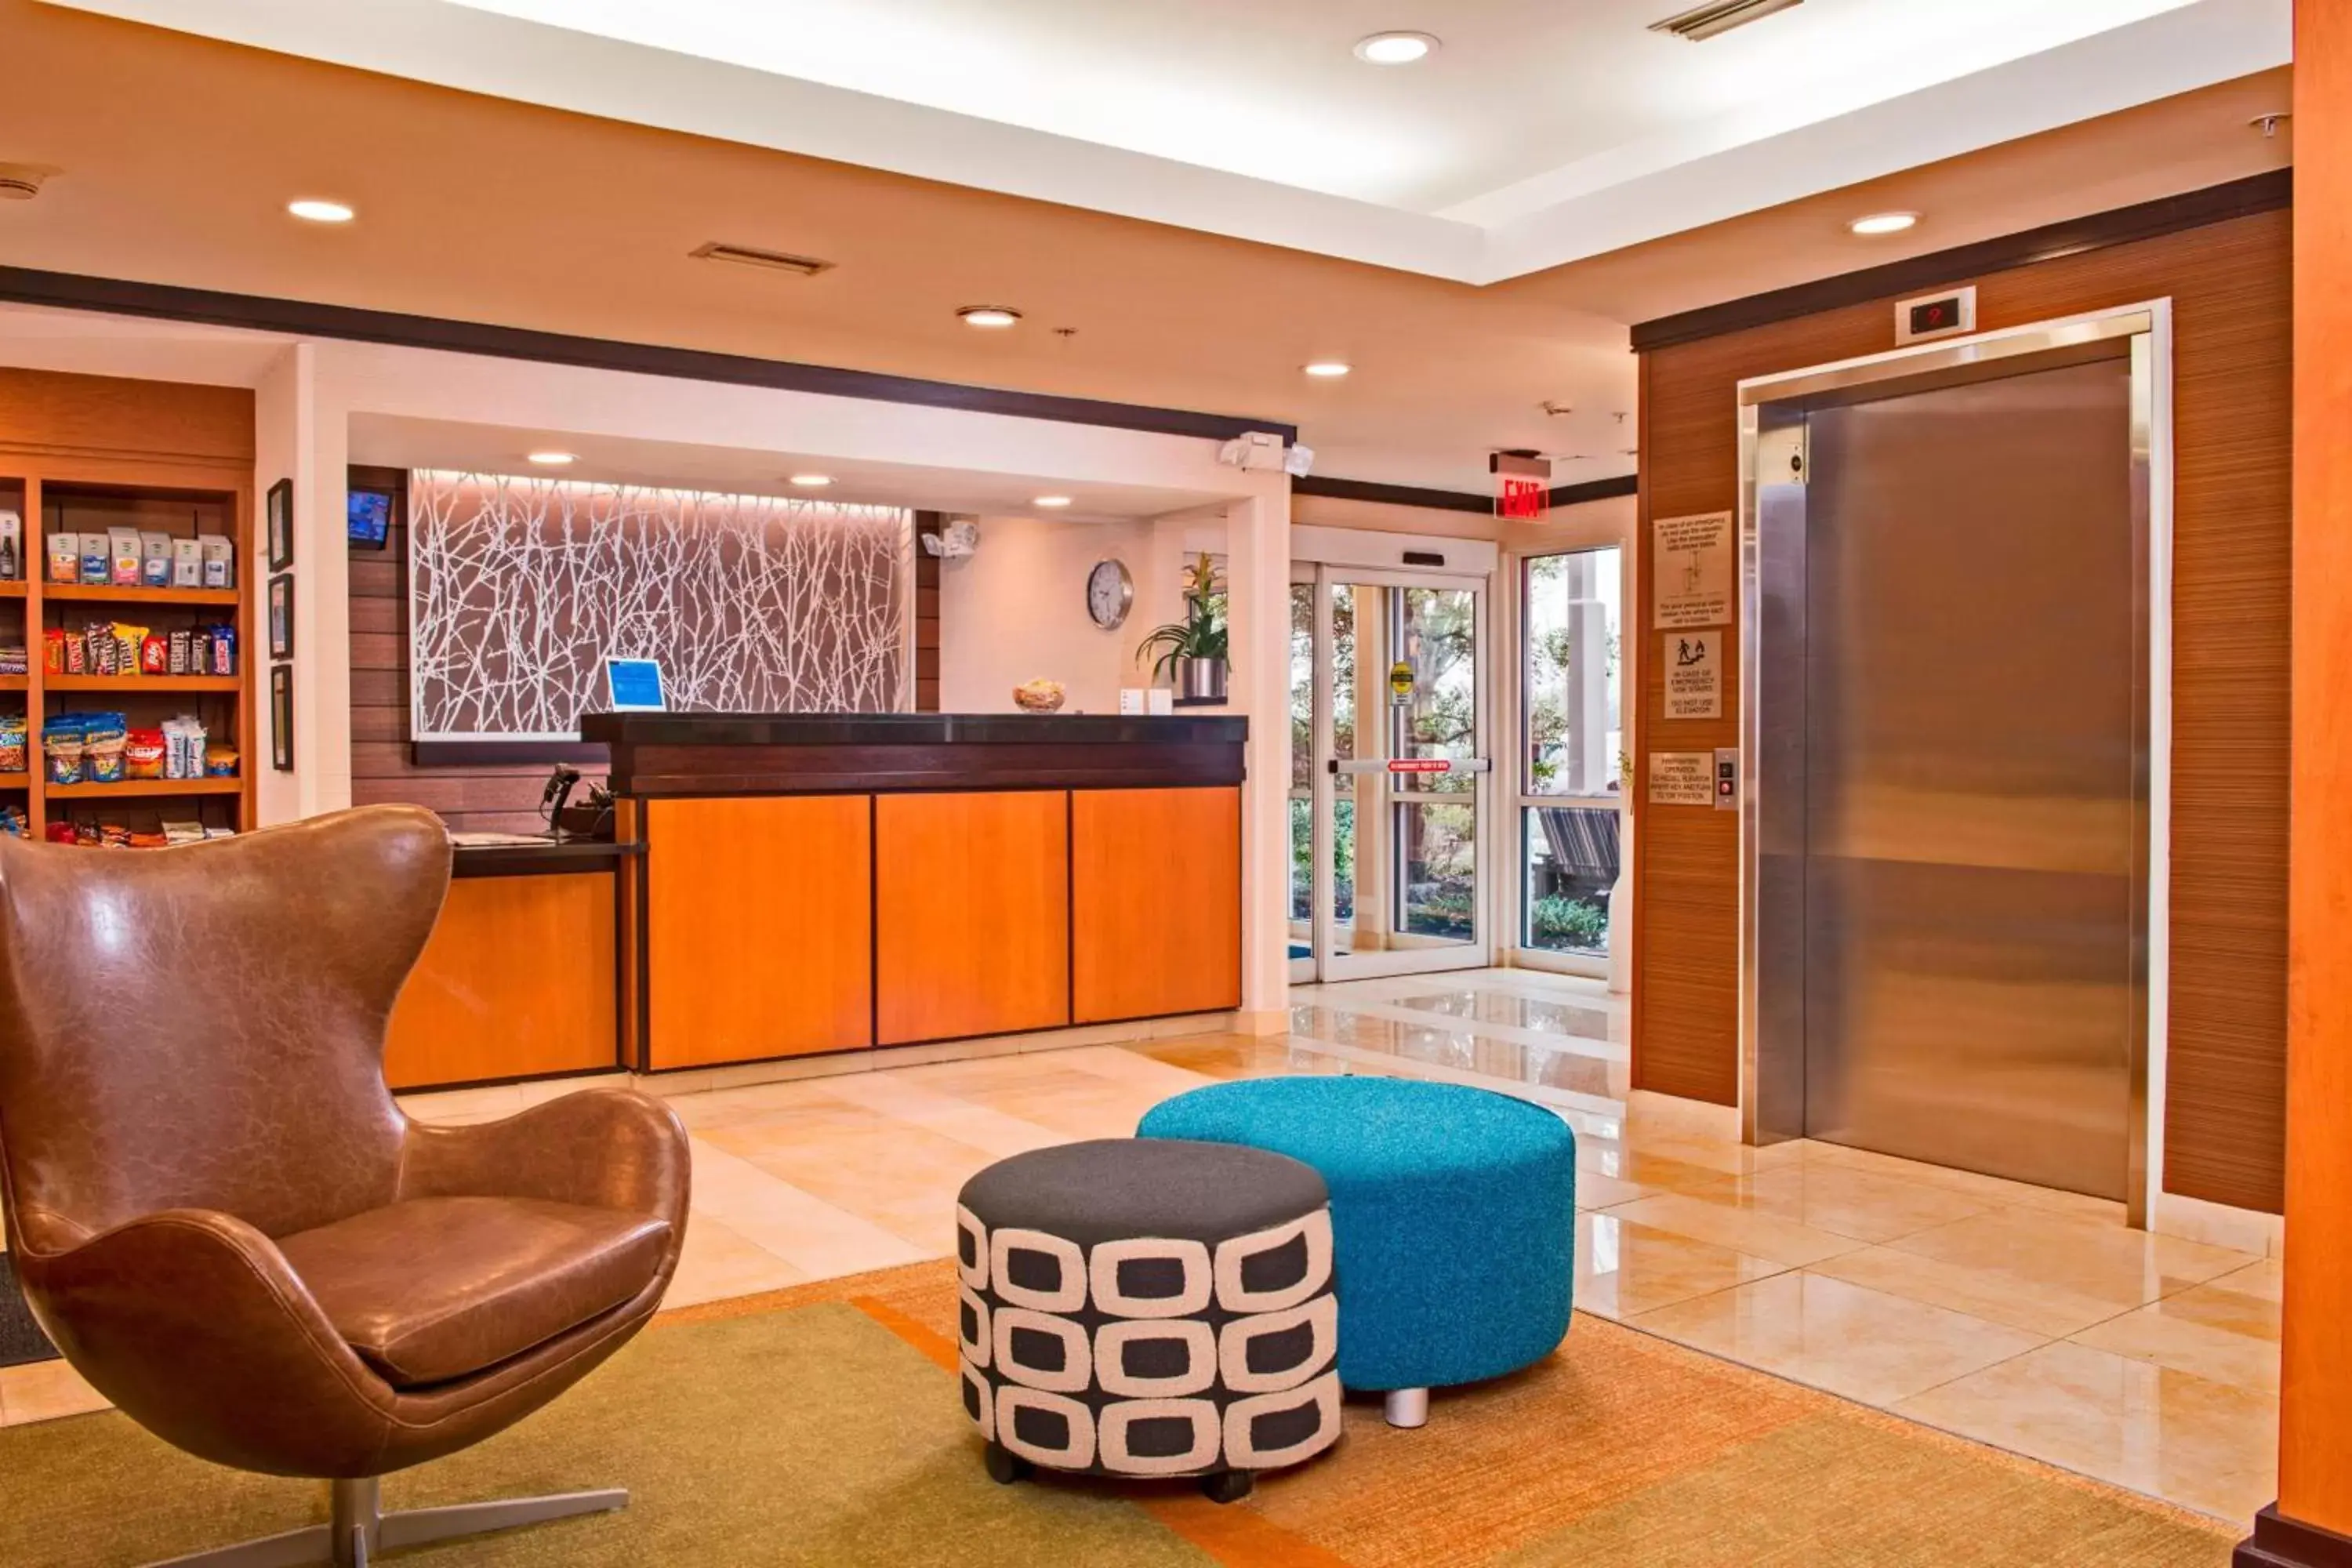 Lobby or reception, Lobby/Reception in Fairfield Inn & Suites by Marriott Frederick